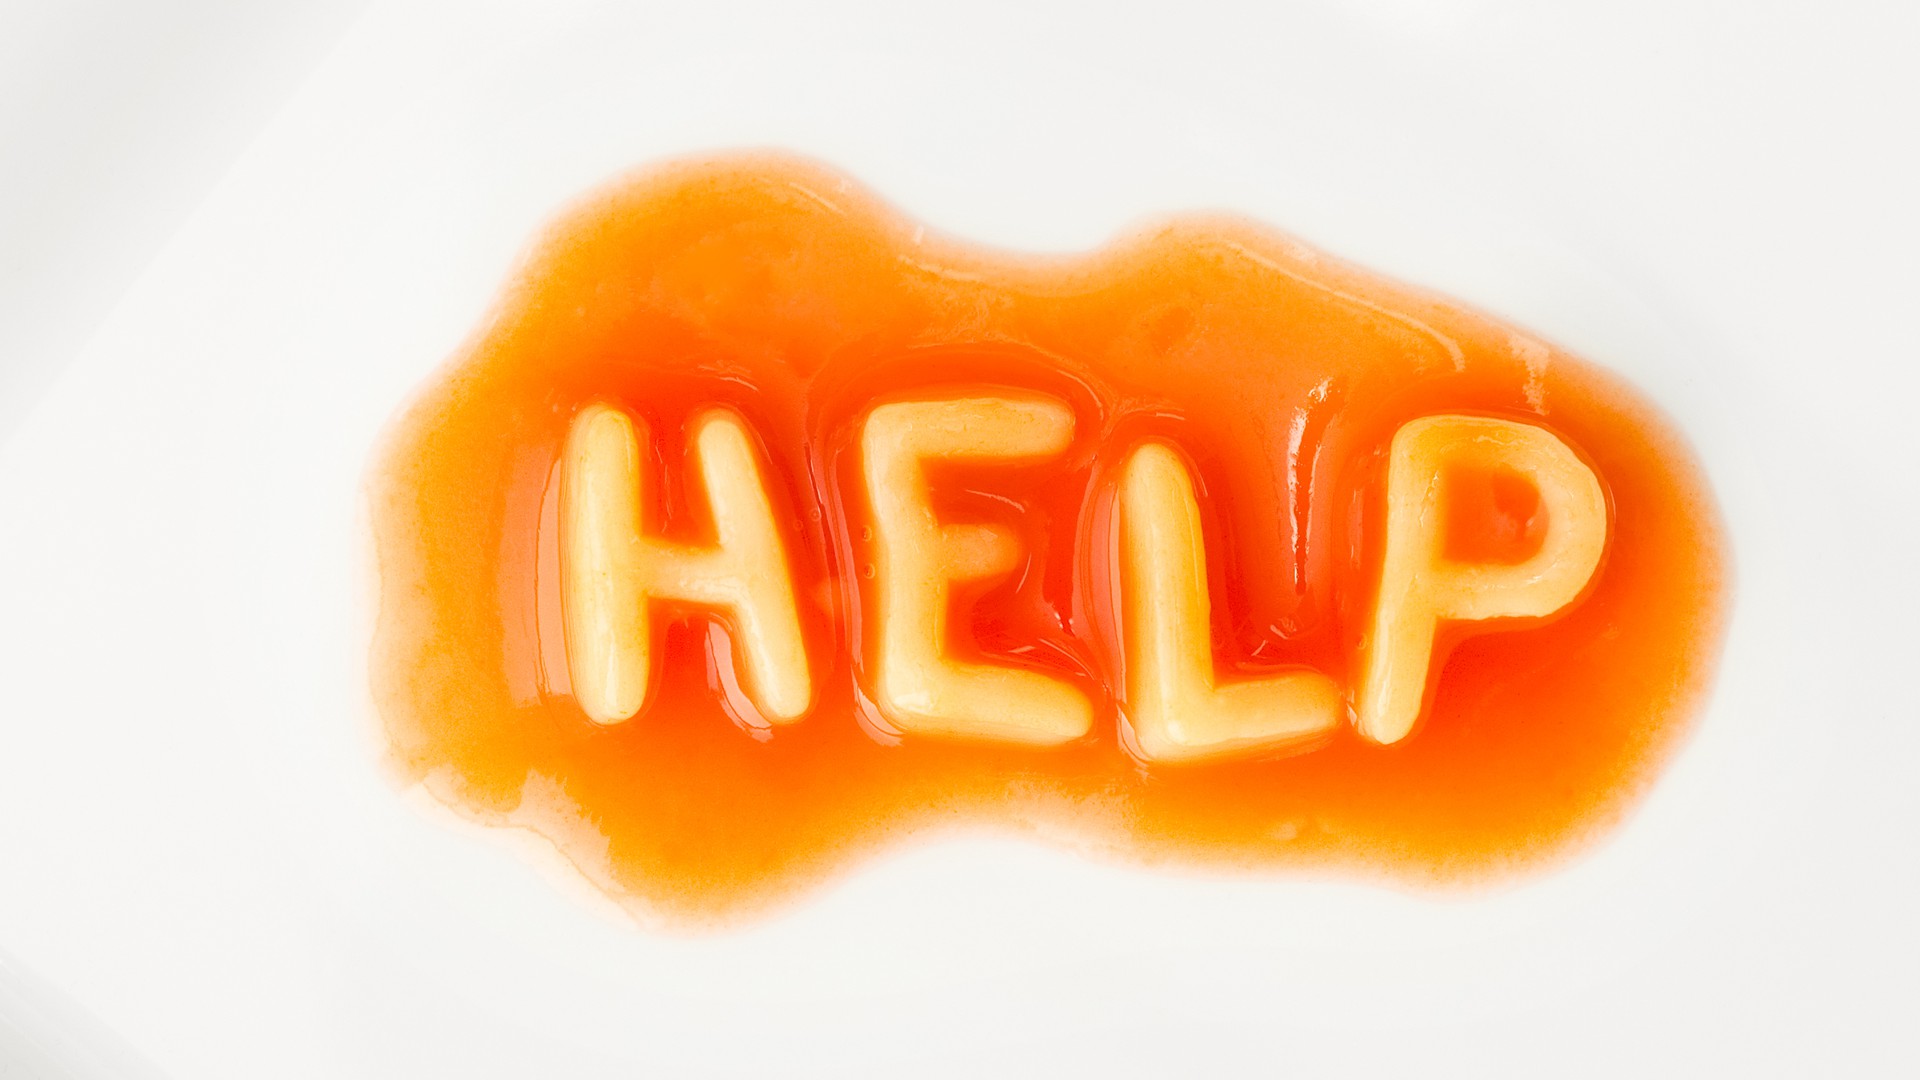 Tomatensauce und Buchstabennudeln formen das Wort Help